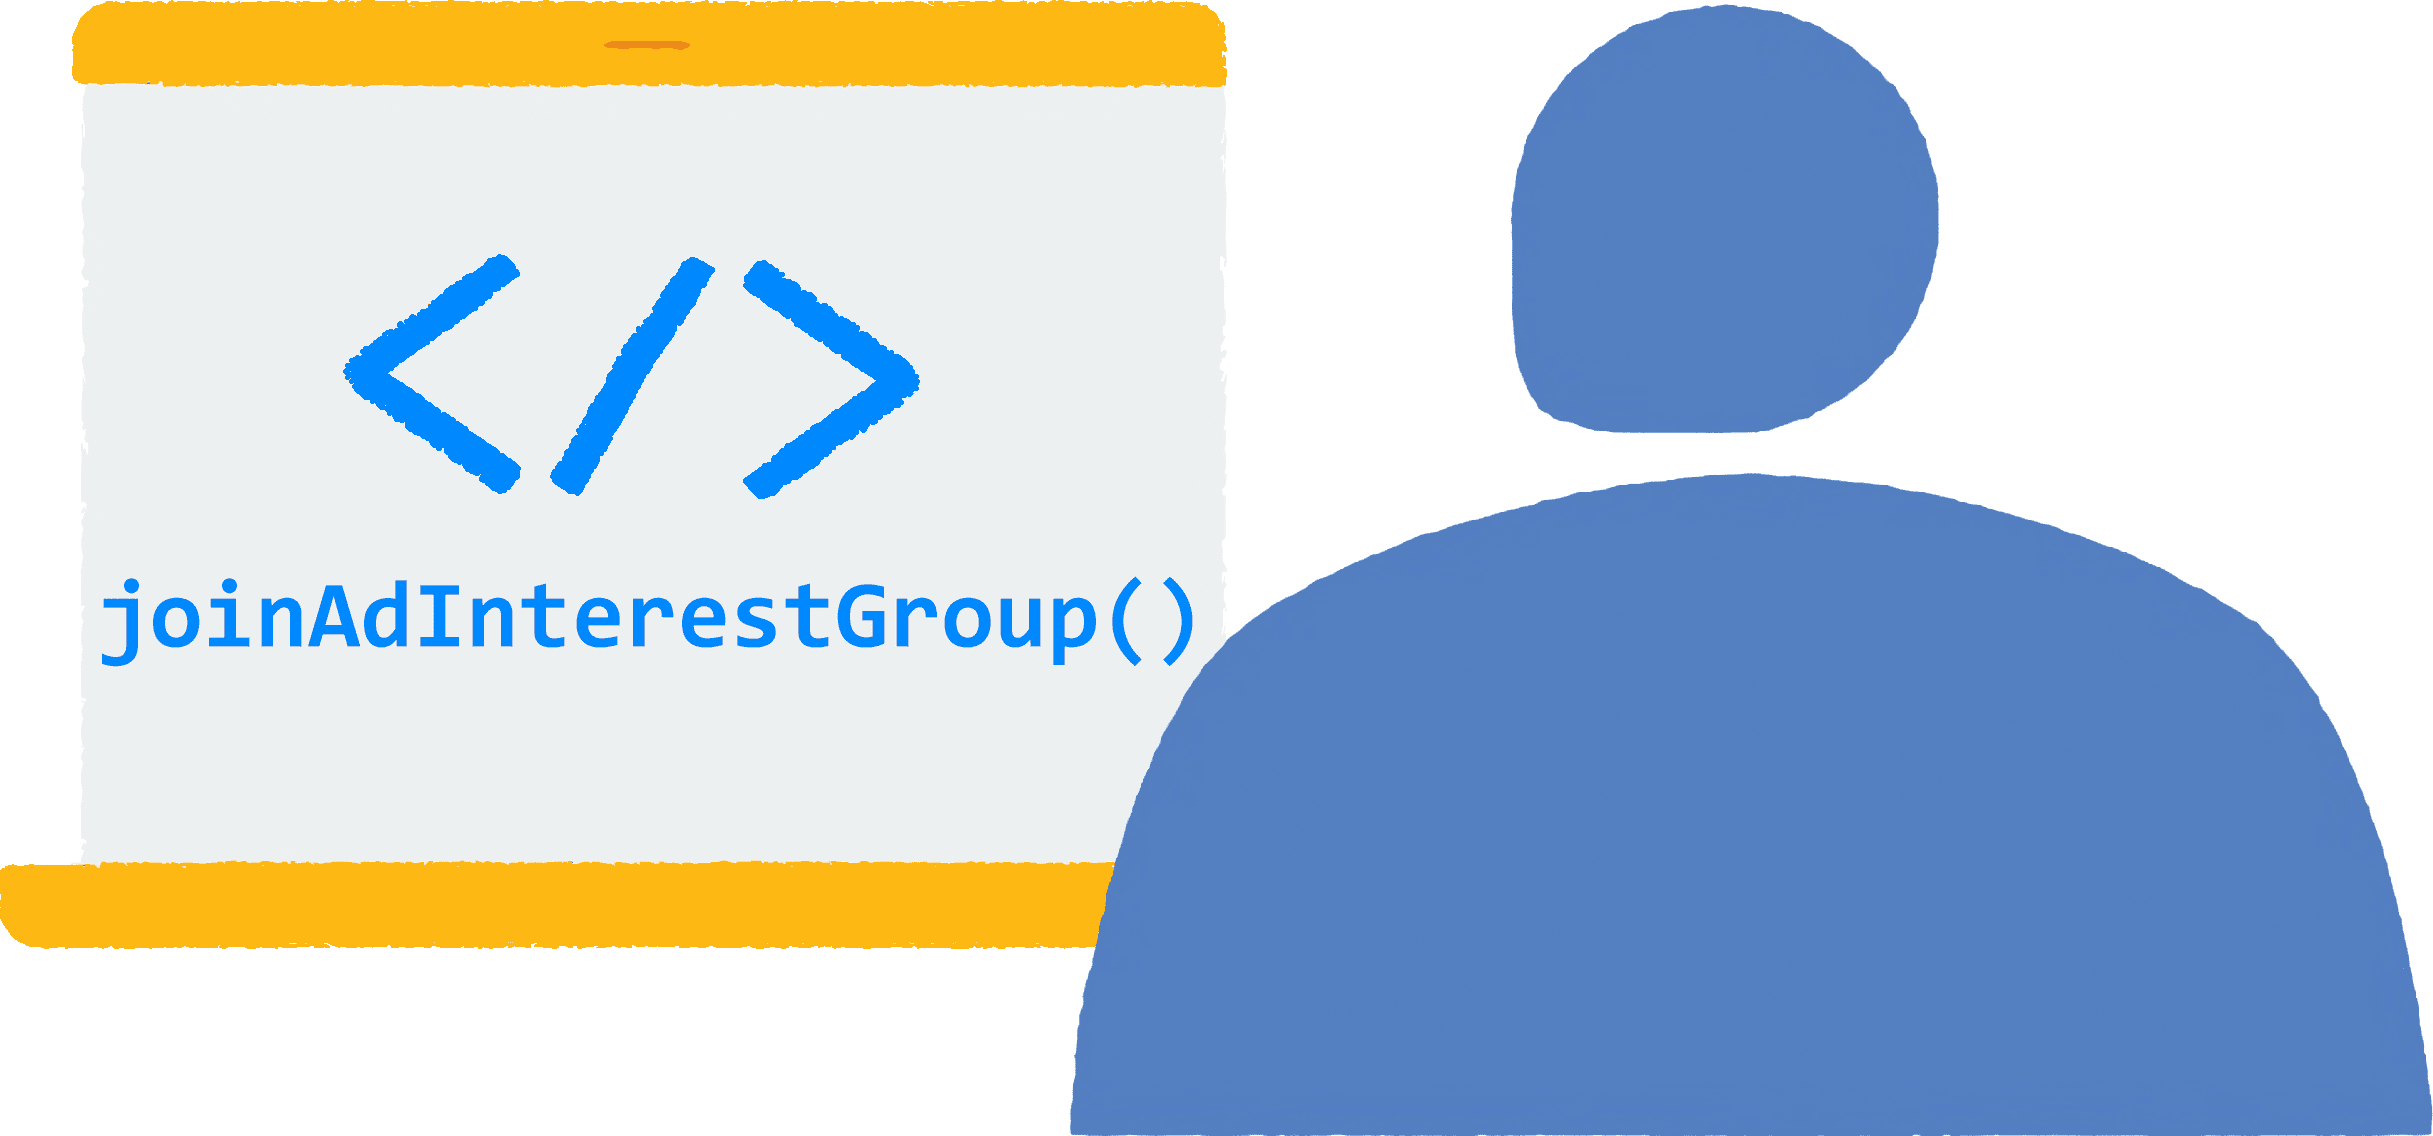 Seorang pengguna membuka browser di laptop dan mengunjungi situs. Kode
  JavaScript untuk bergabung ke grup minat iklan sedang berjalan di browser.